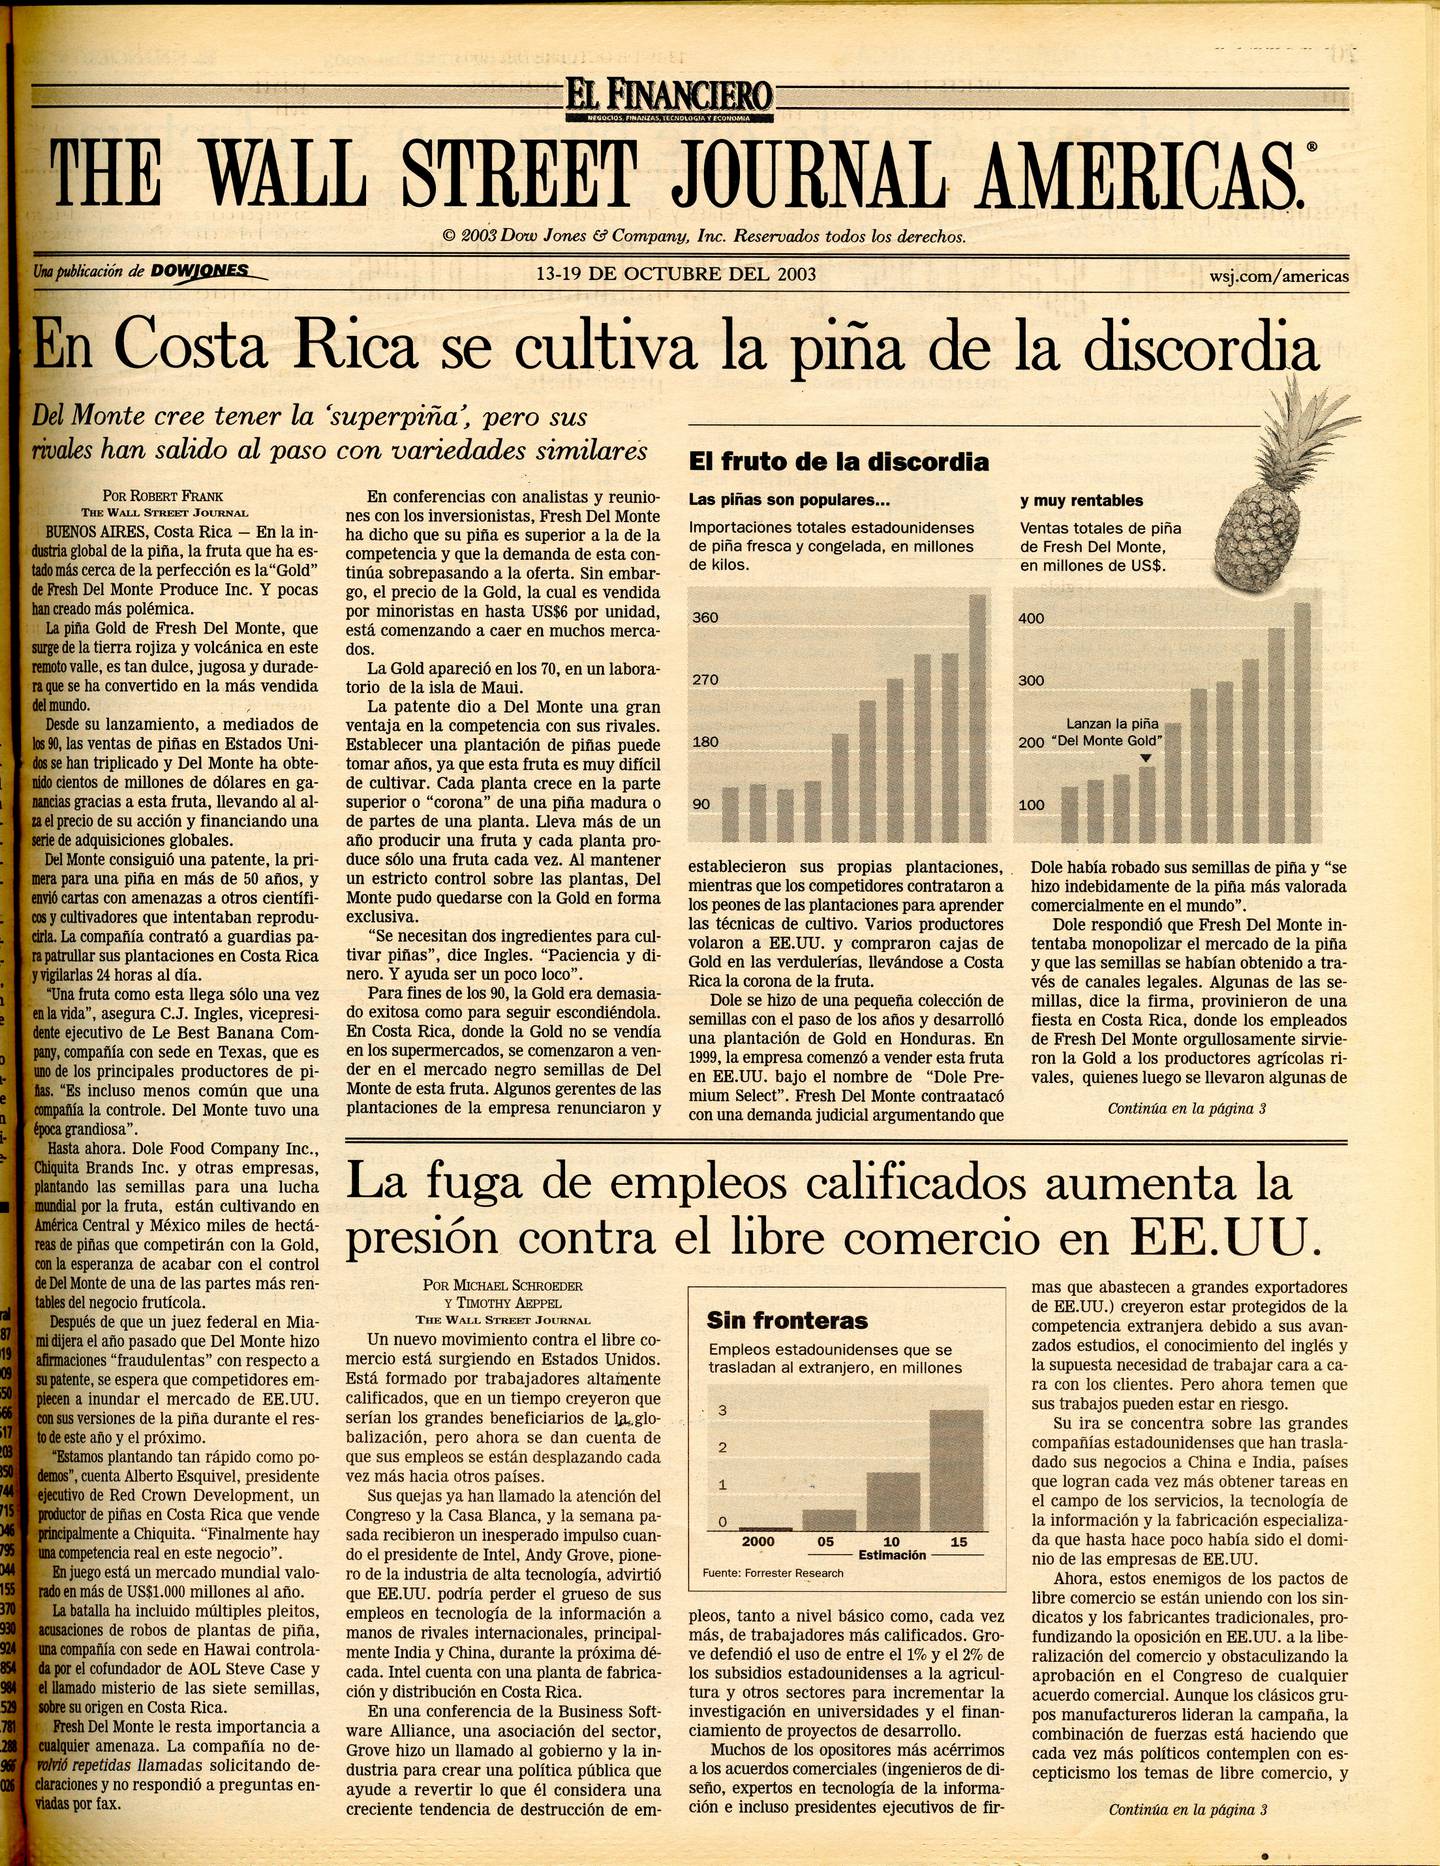 Una publicación del medio estadounidense The Wall Street Journal con fecha de octubre de 2003 relata la explosión del cultivo de la piña en Costa Rica. Foto: Publicación de El Financiero.